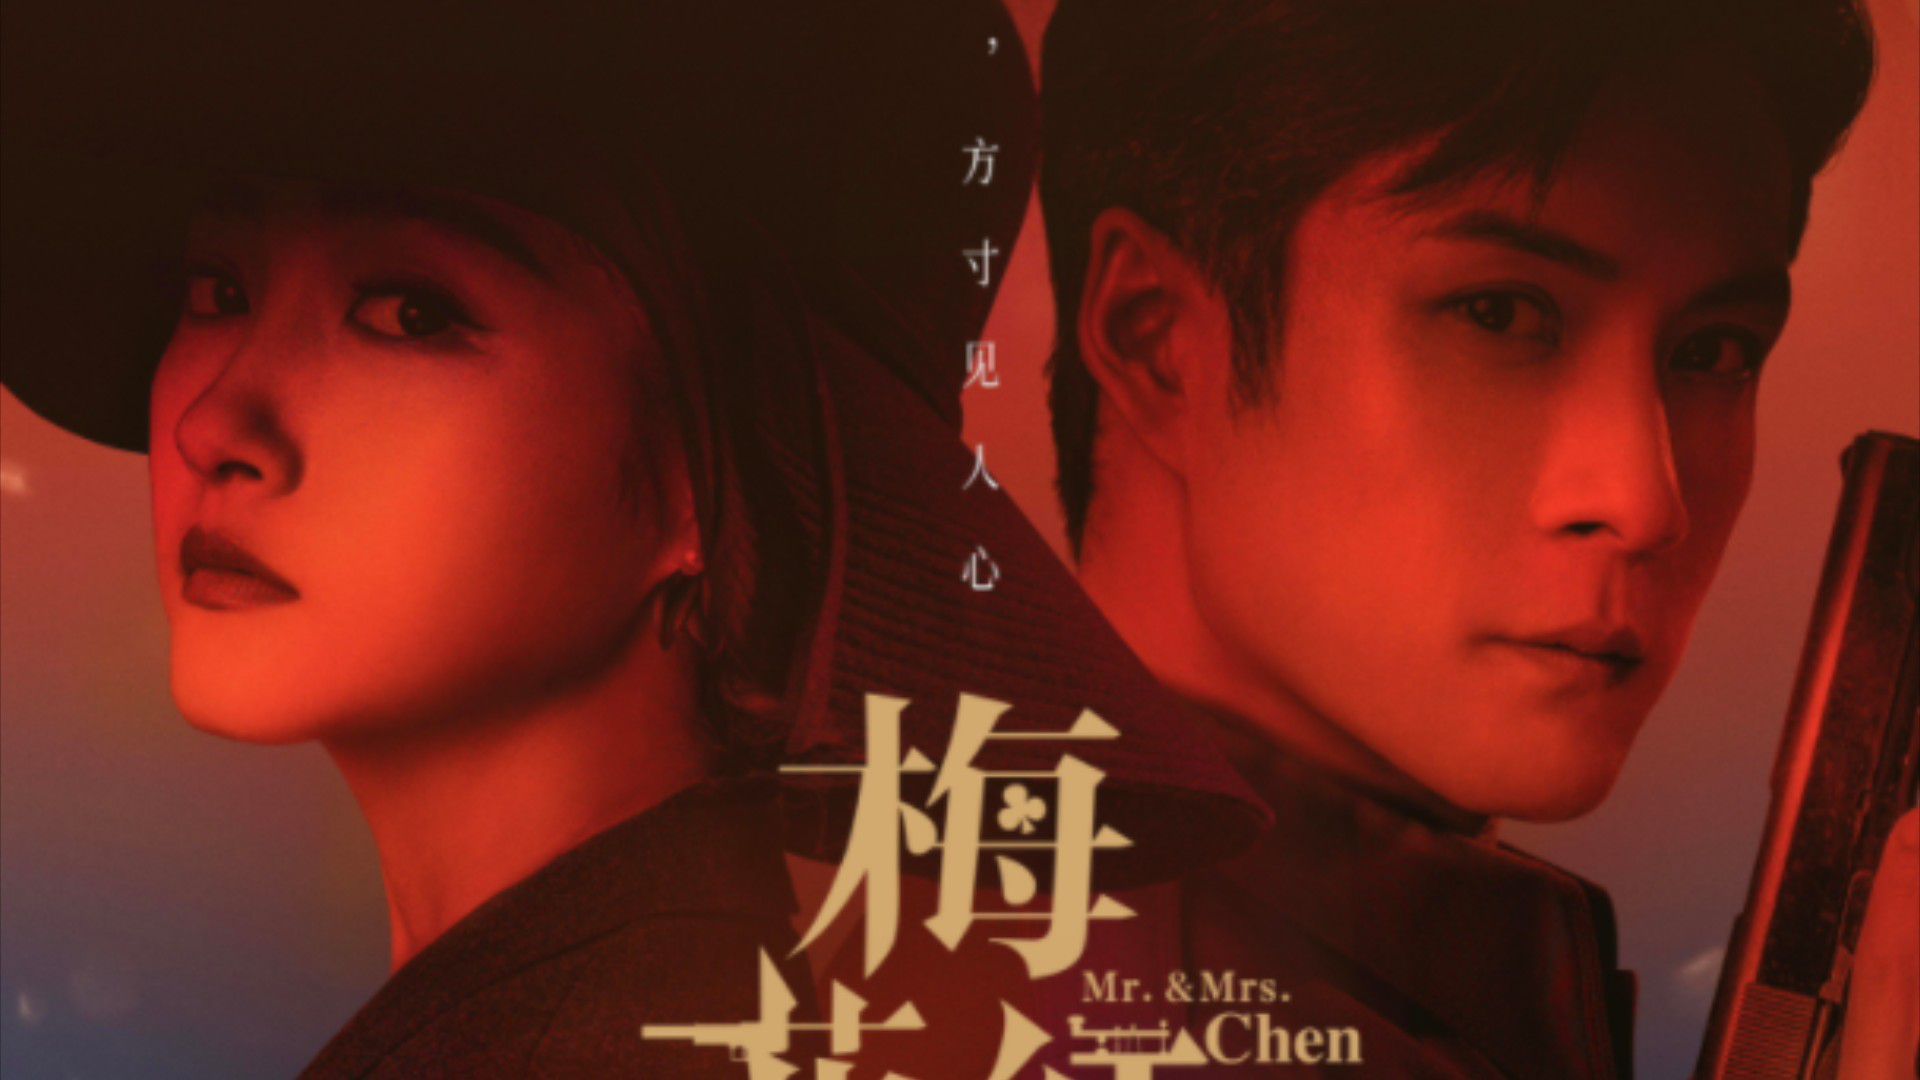 Mai Hoa Hồng Đào - Mr. & Mrs. Chen